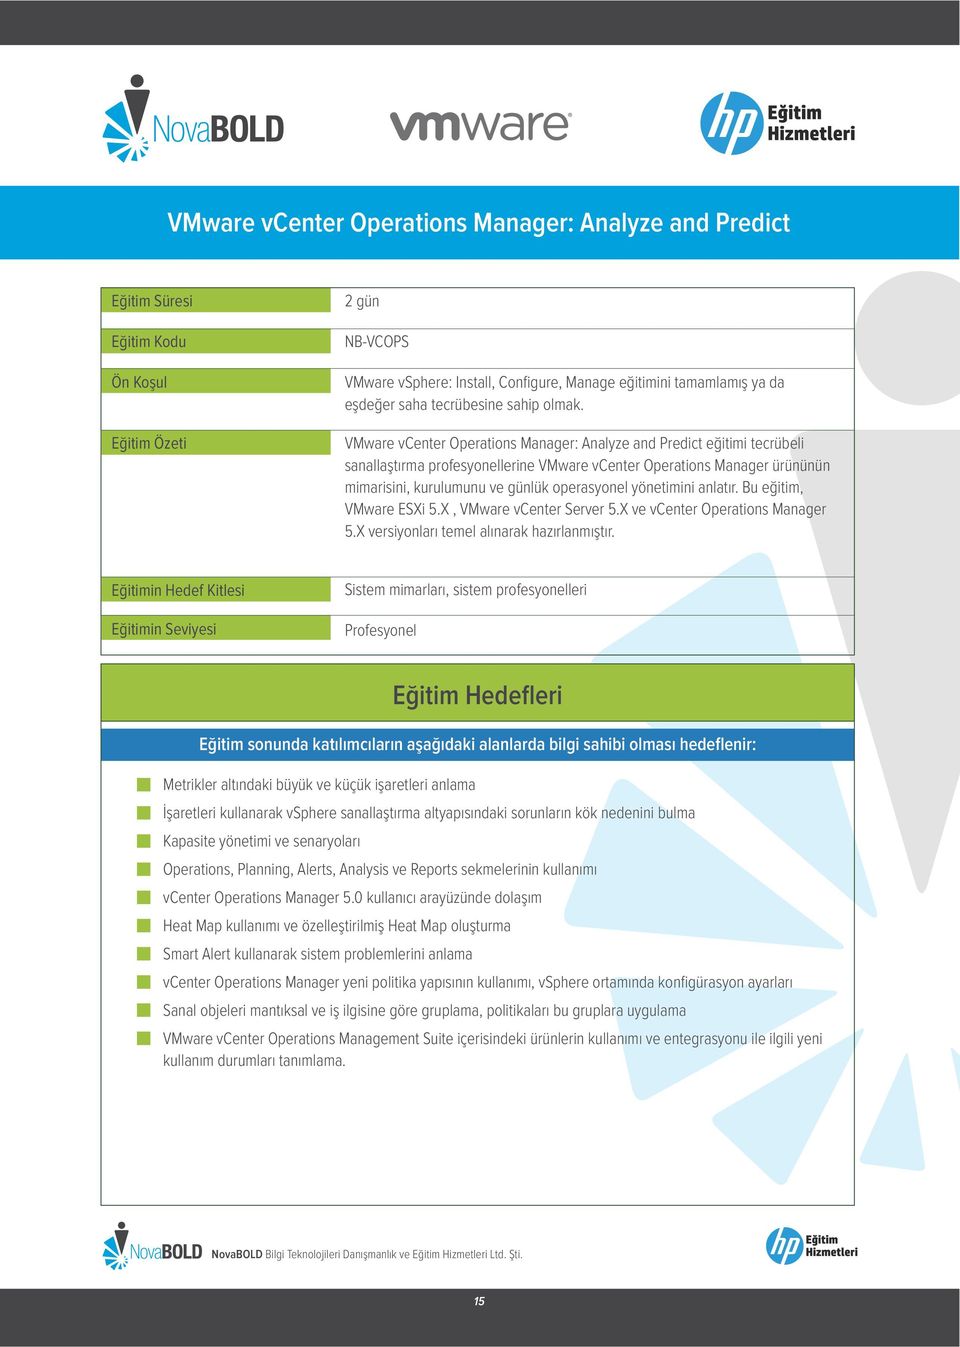 VMware vcenter Operations Manager: Analyze and Predict eğitimi tecrübeli sanallaştırma profesyonellerine VMware vcenter Operations Manager ürününün mimarisini, kurulumunu ve günlük operasyonel